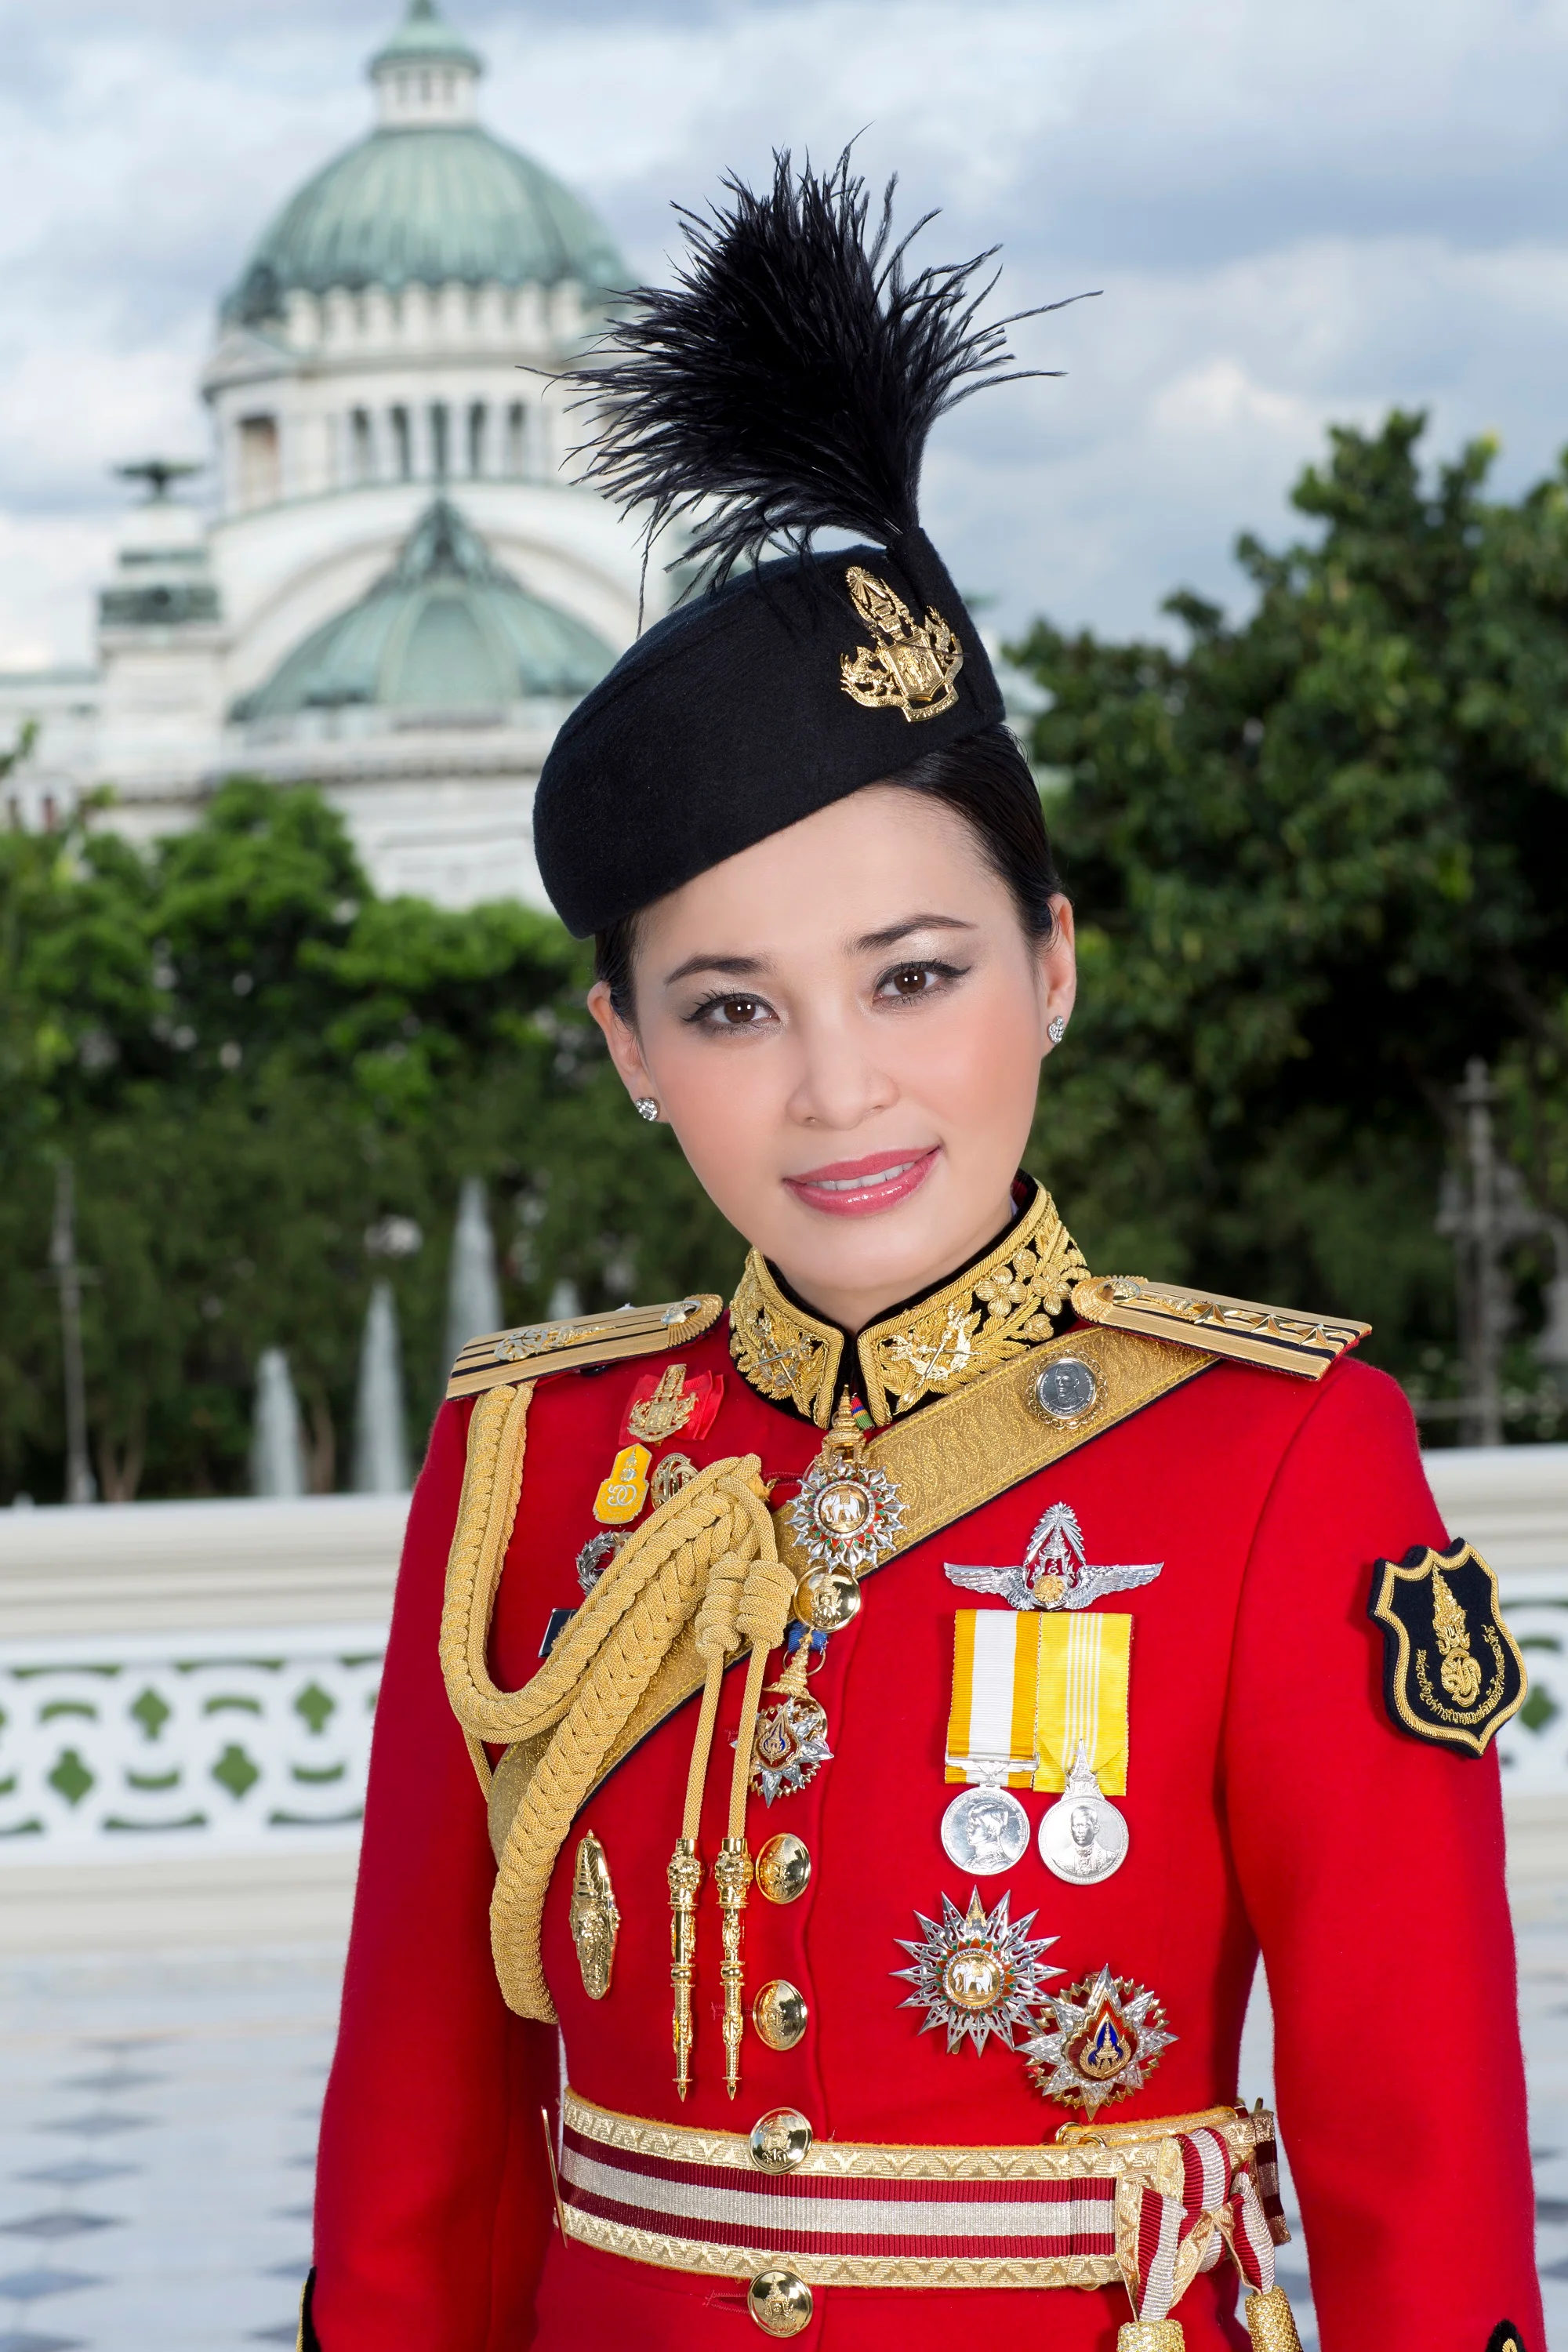 Появились первые официальные фото королевы Таиланда, и они не похожи на портрет Меган - фото 434522